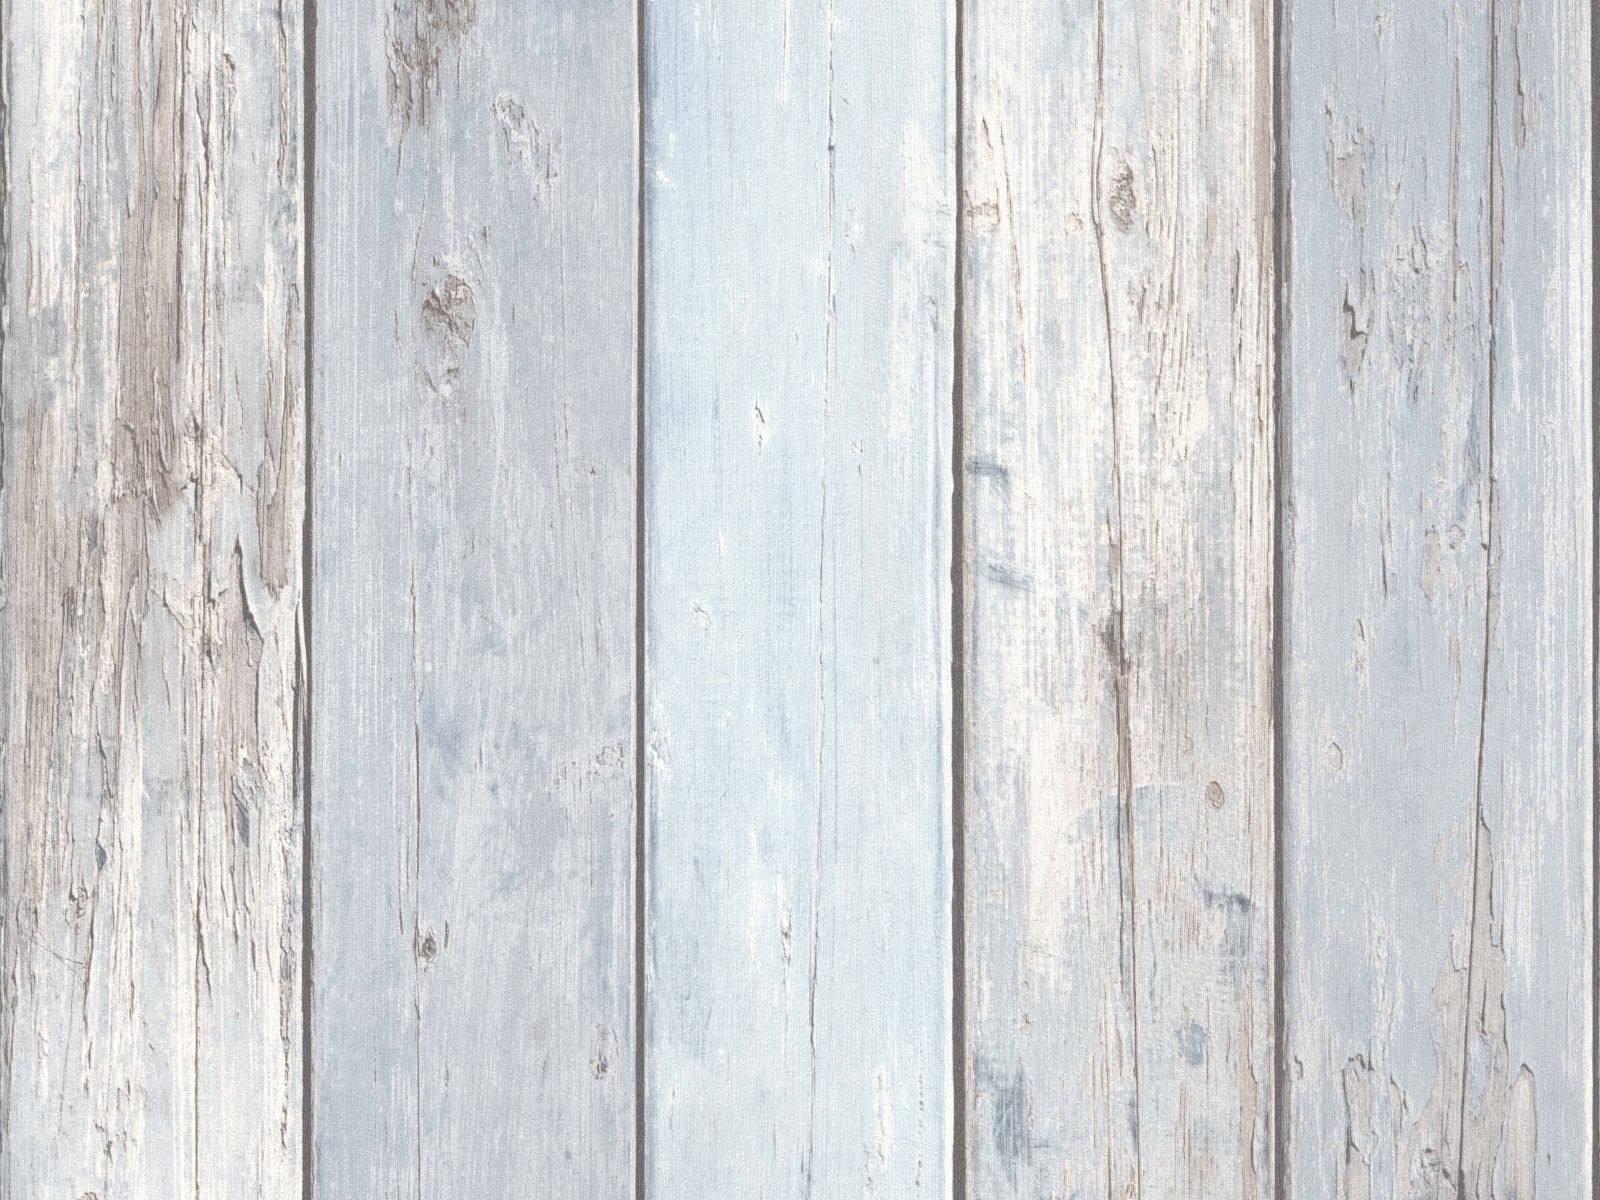 Vliesová tapeta s dizajnom drevených starých dosiek s efektom morskej patiny vo svetlej šedomodrej farbe, ER-601418